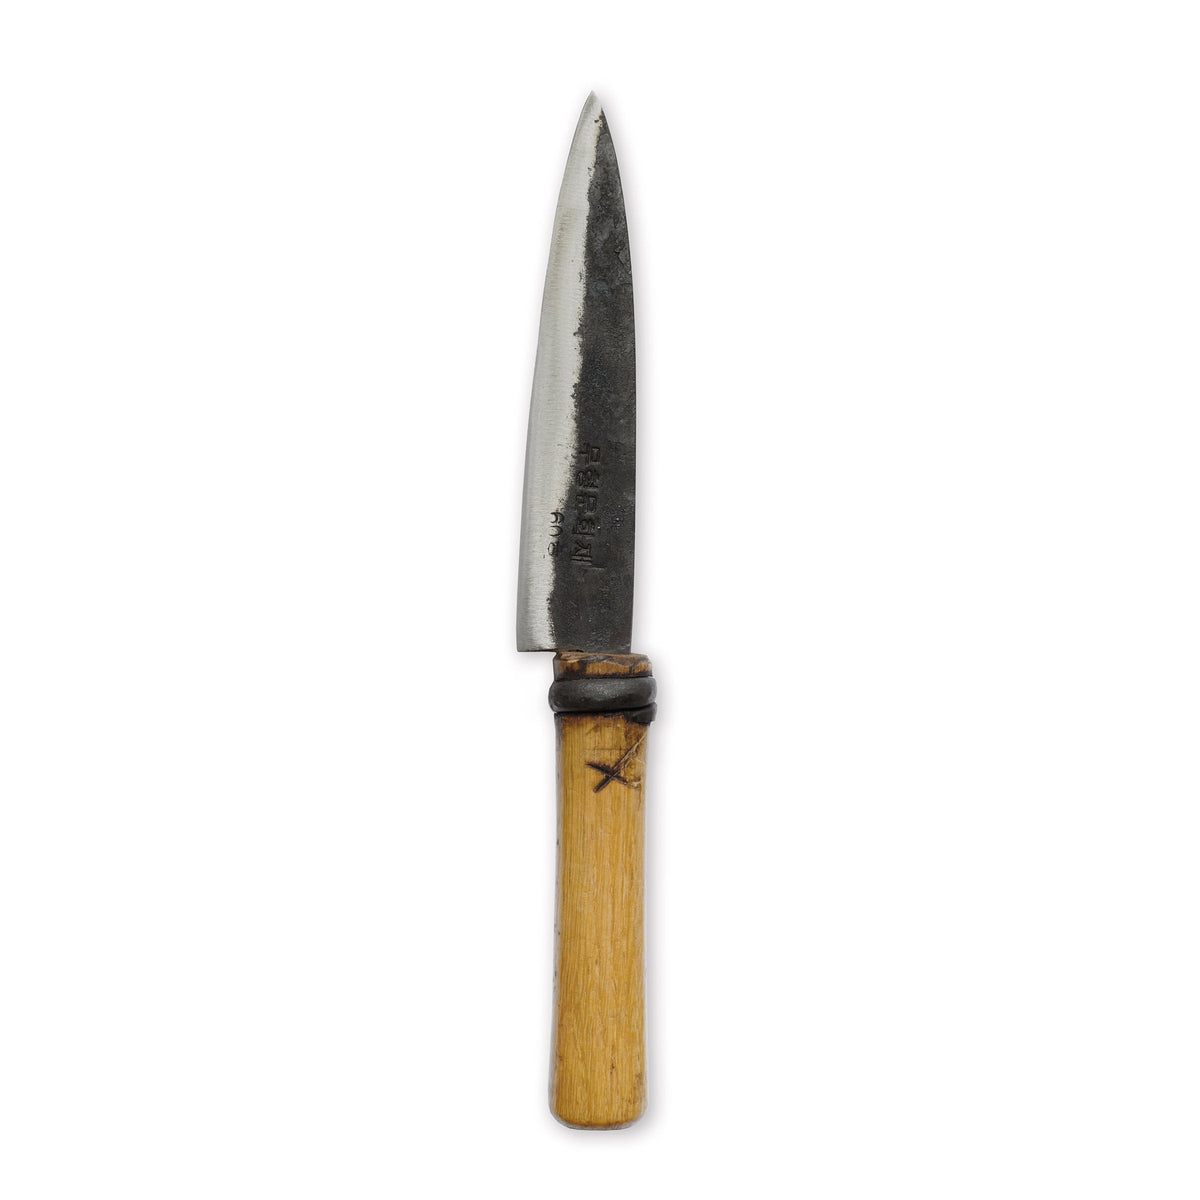 #61 Rustic Sashimi Knife, product photo on white background